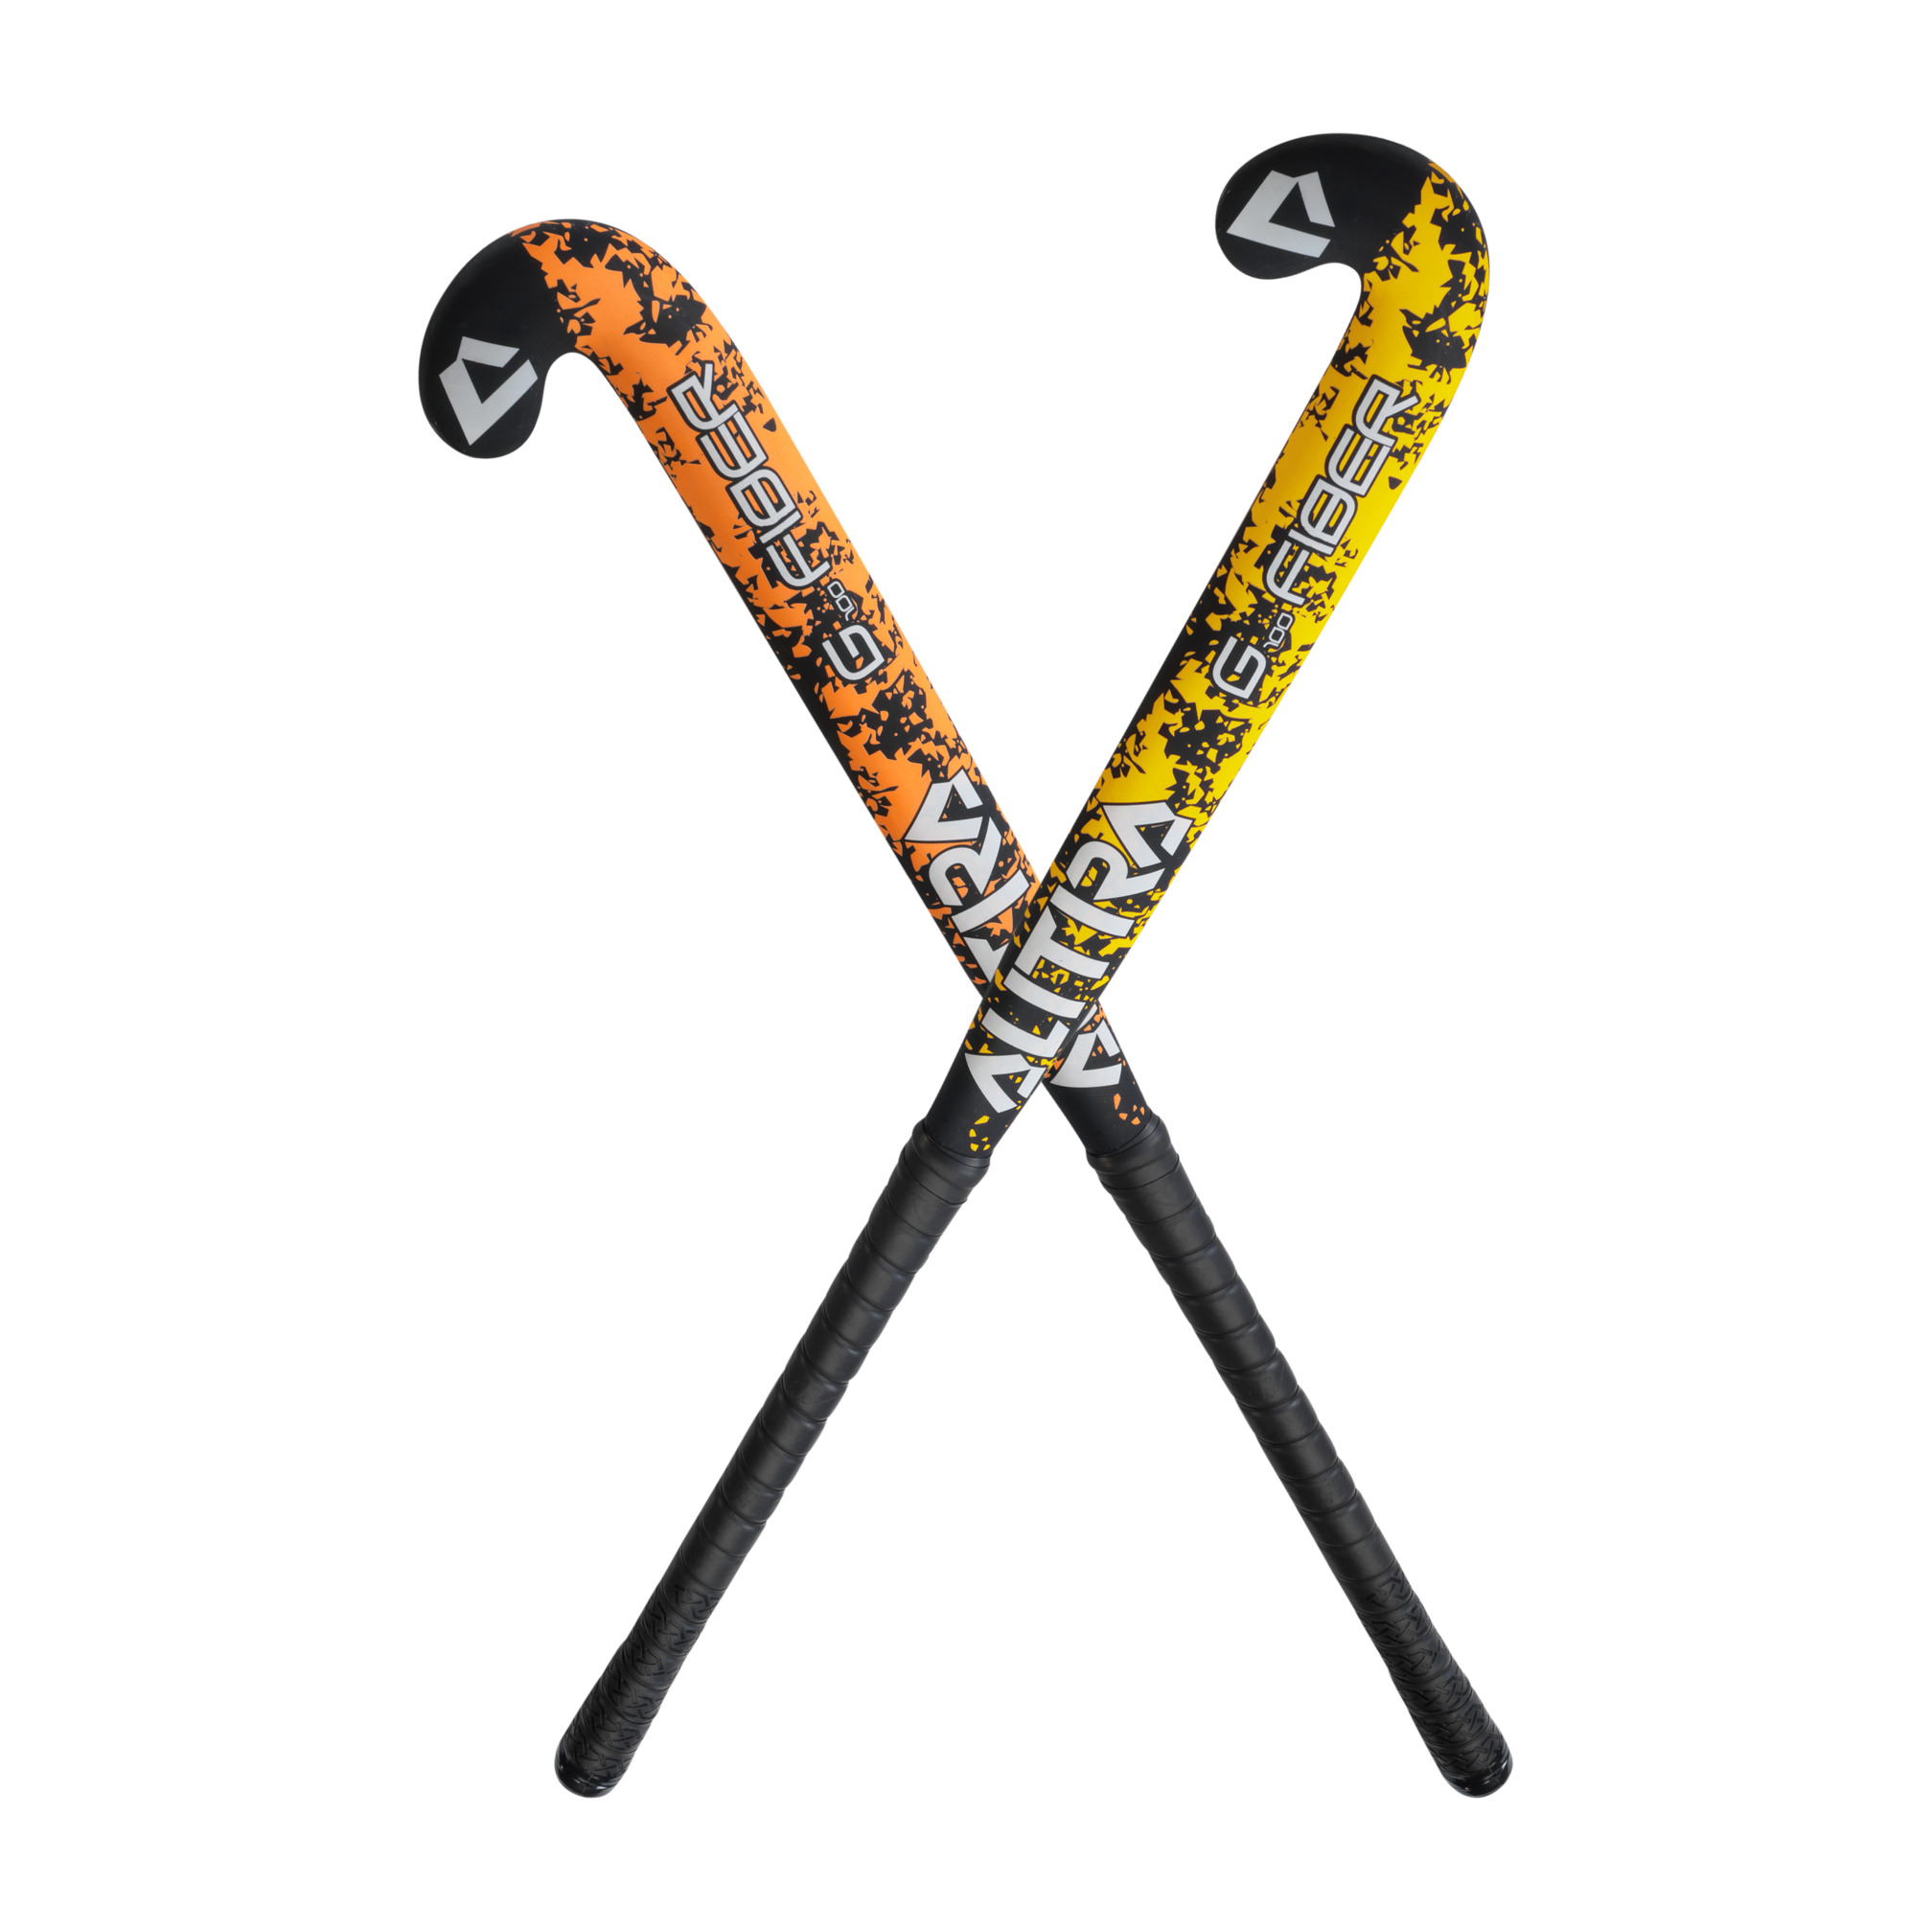 Outdoor Hockeyschläger, gelb